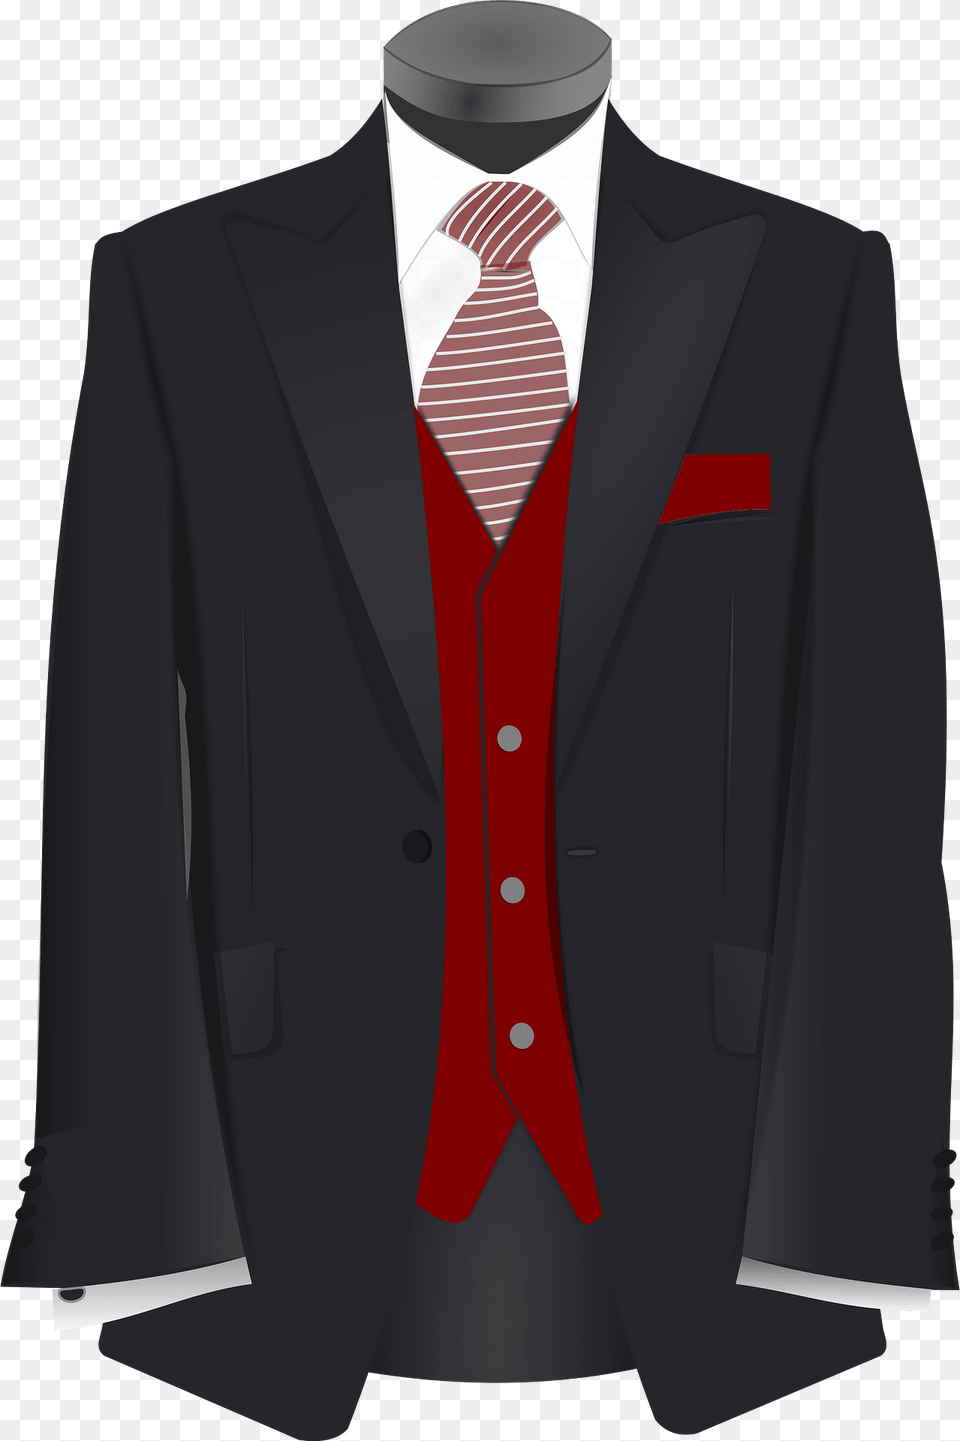 Tuxedo Clipart, Accessories, Tie, Suit, Jacket Free Transparent Png